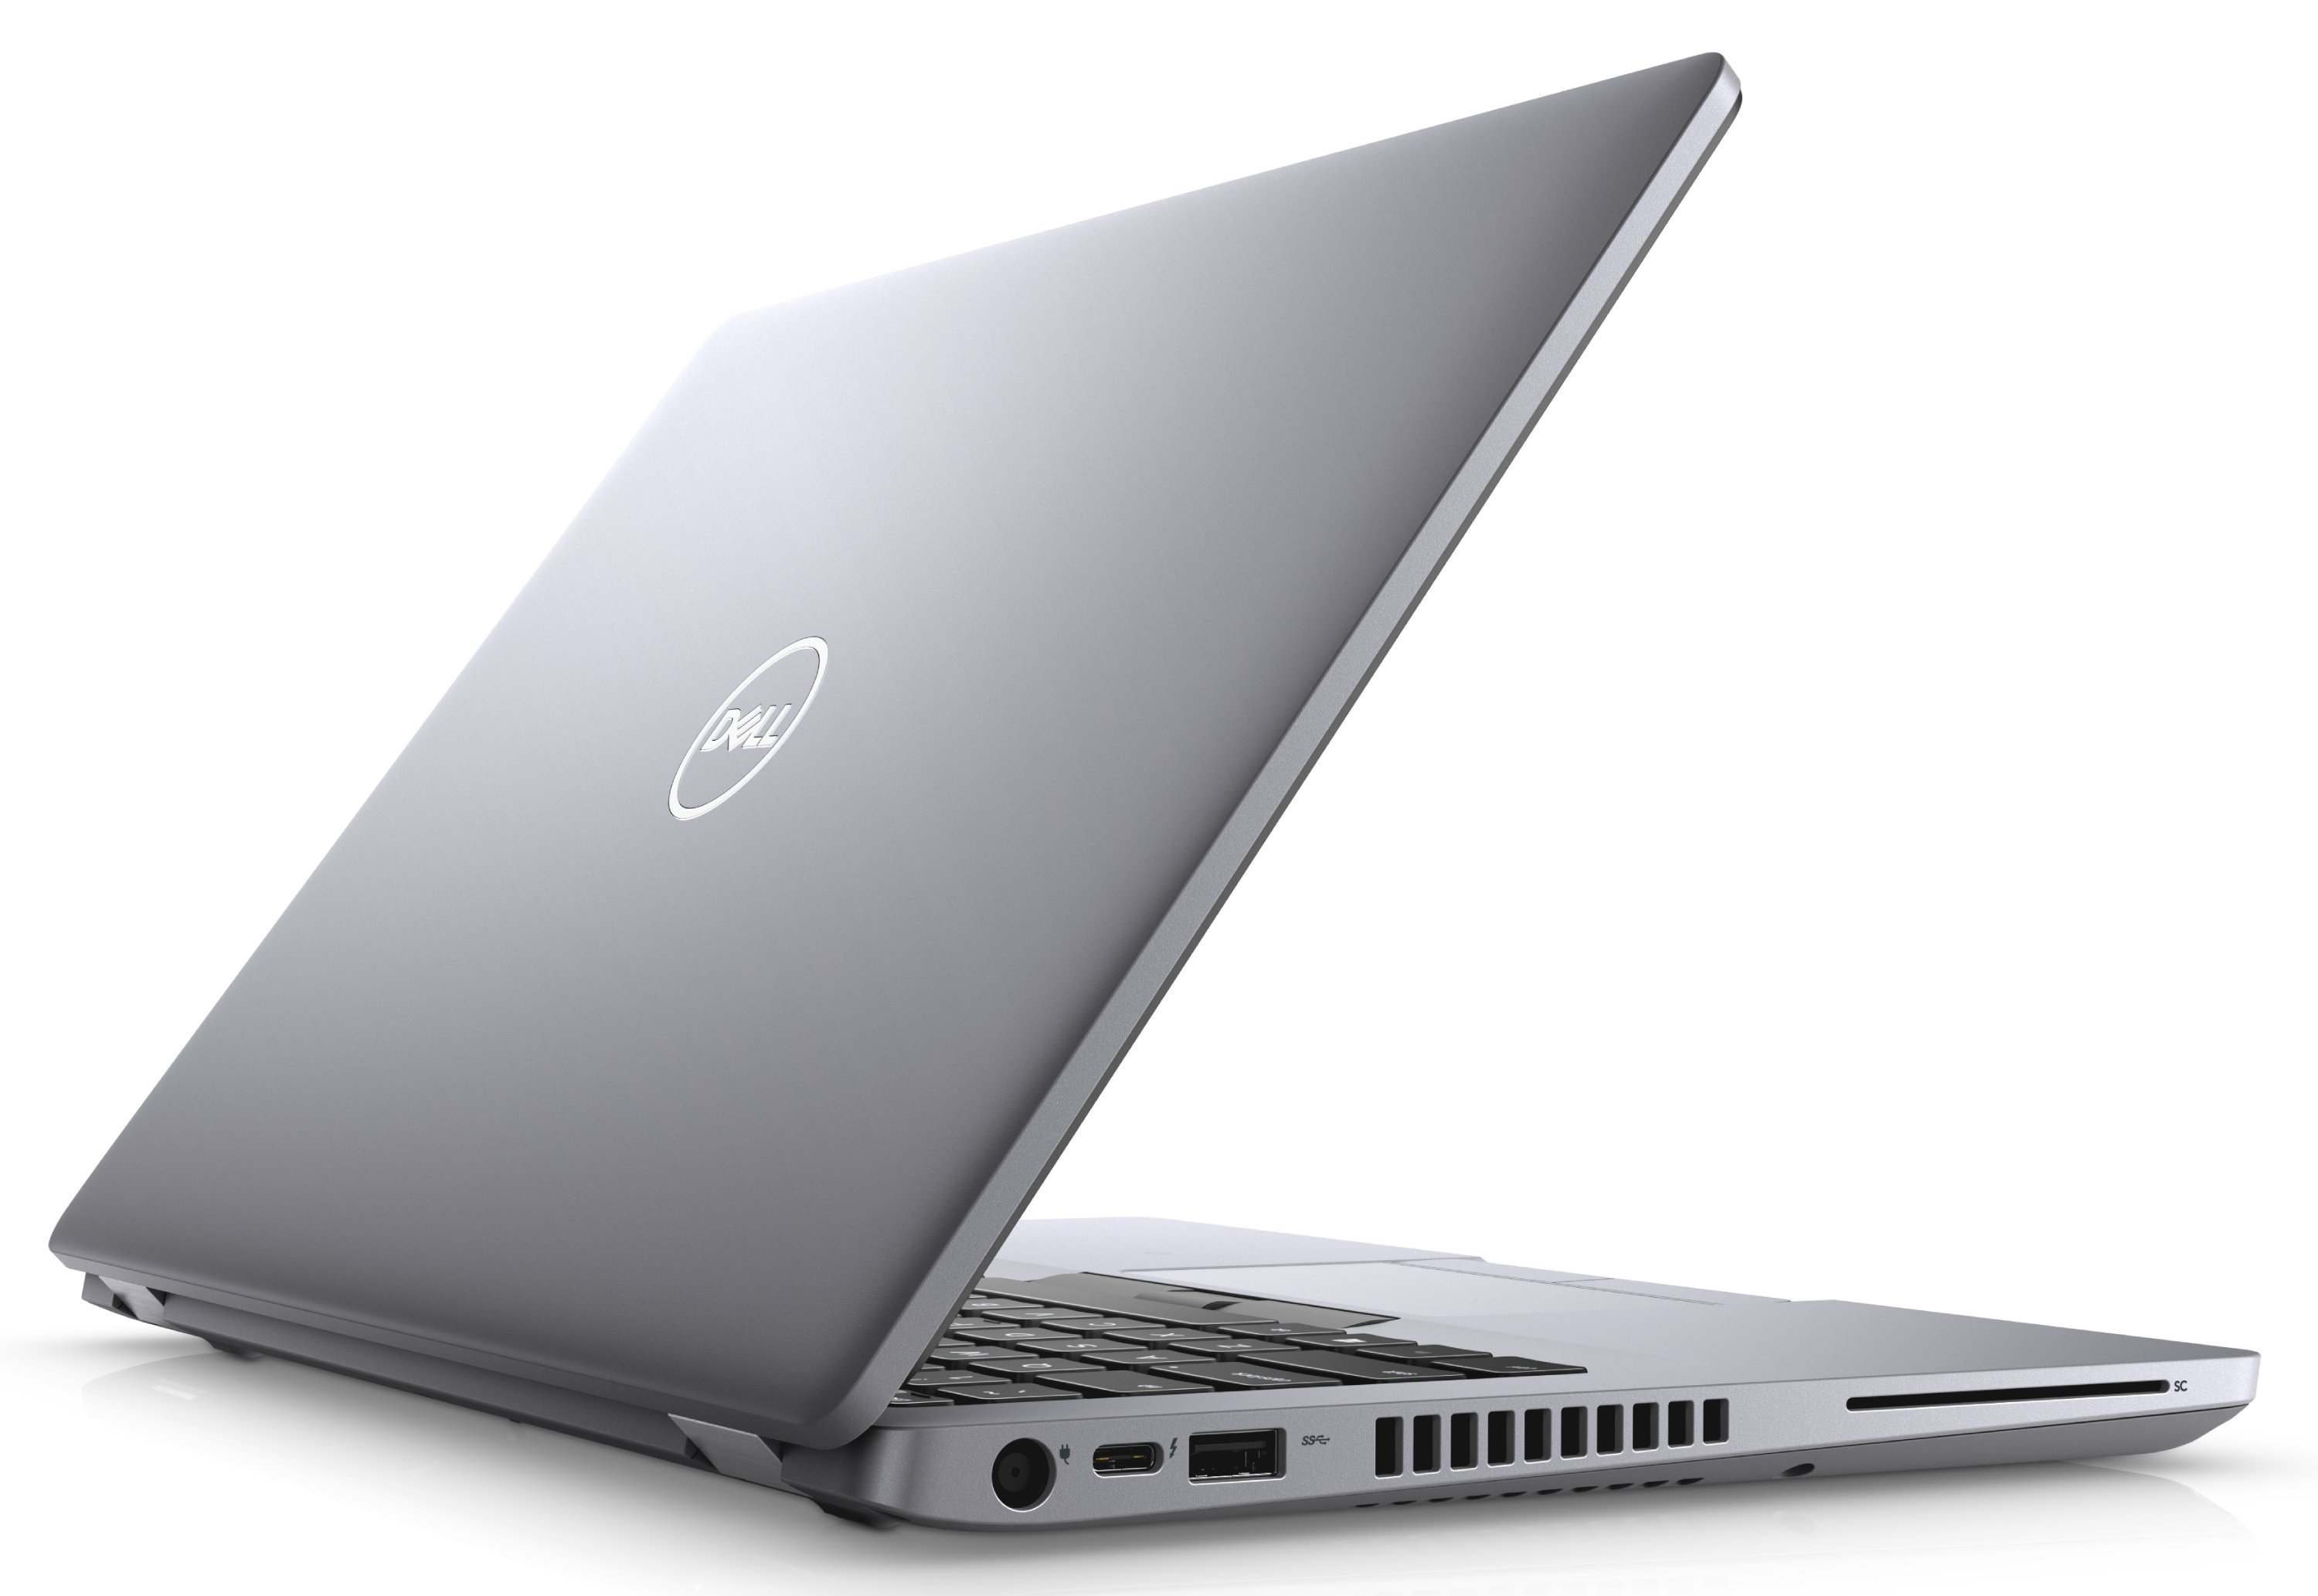 Ноутбук Dell Latitude 5410 Core i5-10310U (1,7GHz)14,0" FullHD WVA Antiglare 300 nits 8GB (1x8GB) DDR4 256GB SSD Intel UHD 620,FPR, TPM,Thunderbolt 3,4 cell (68Whr) W10 Pro 3y NBD,Gray-39134